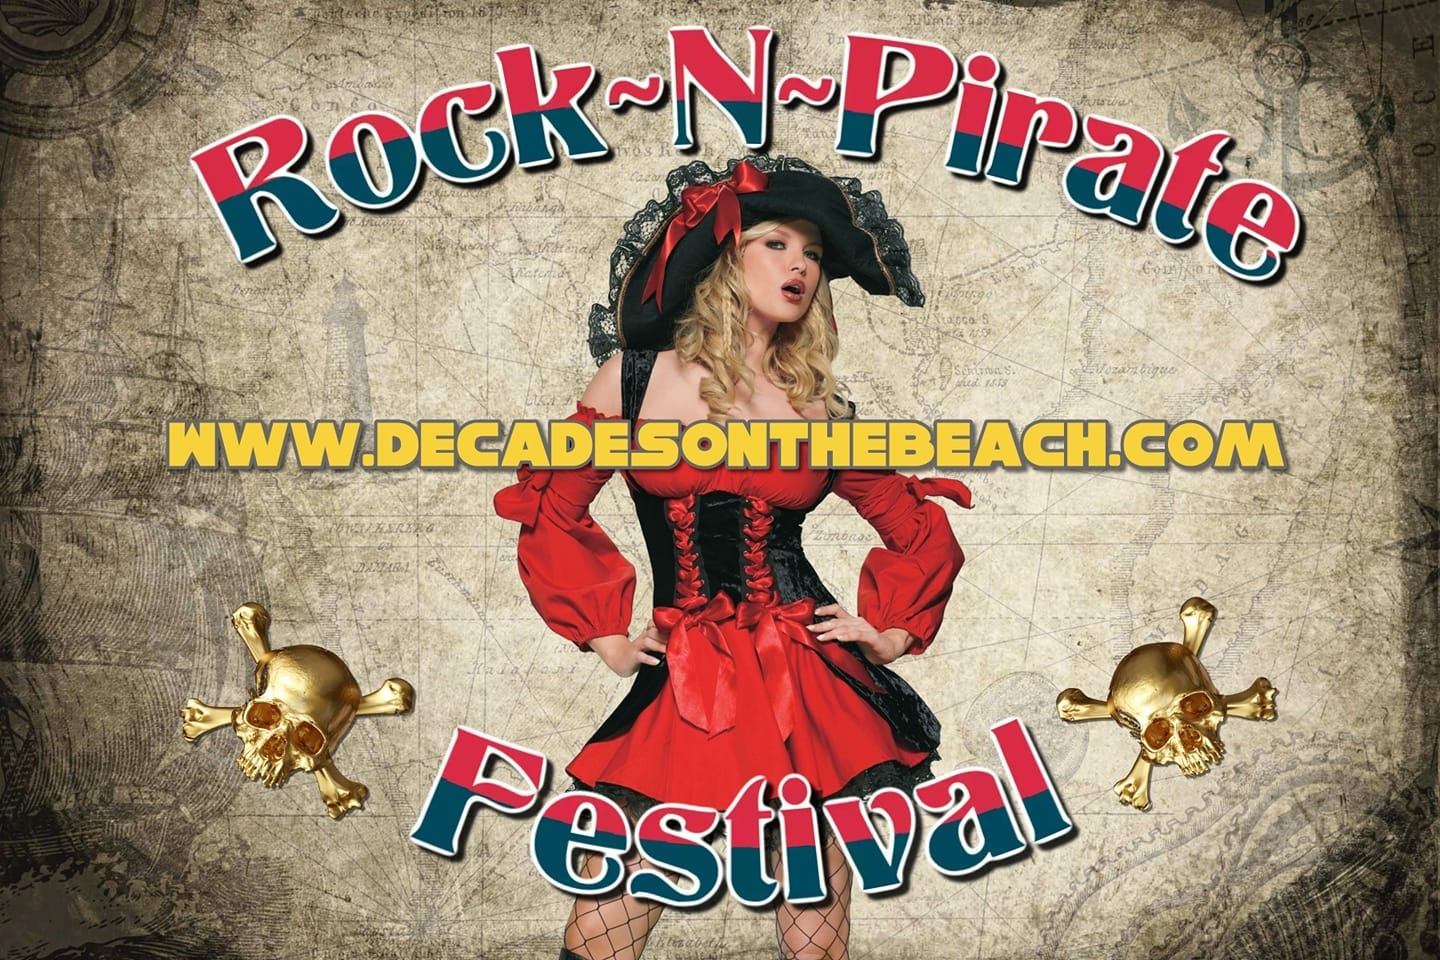 Rock N Pirate Festival